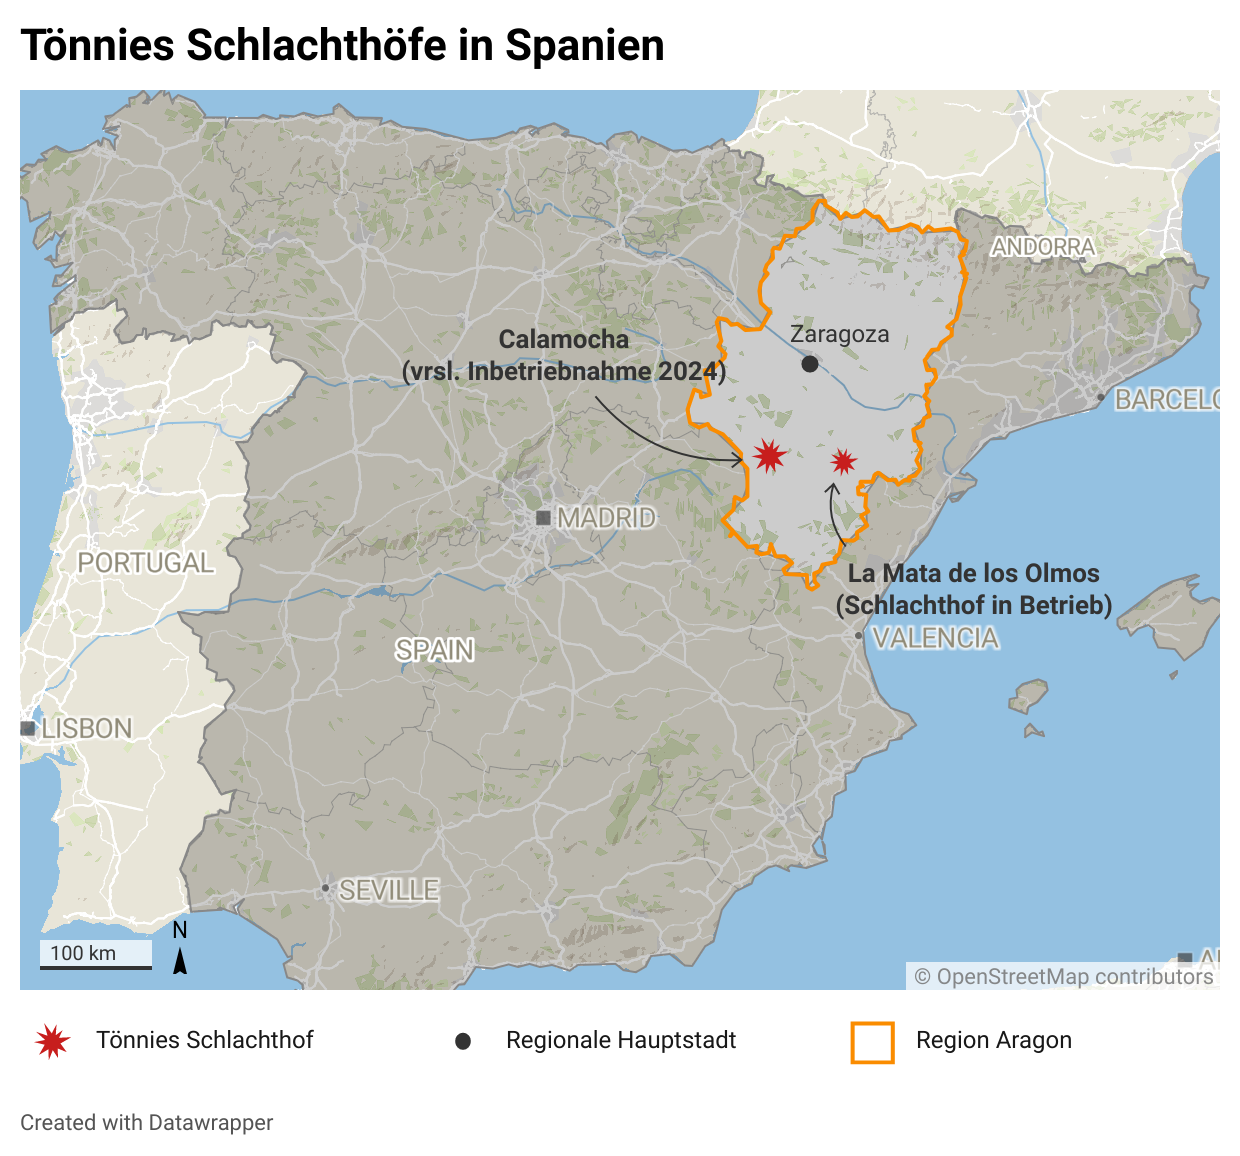 Karte von Spanien mit Tönnies Schlachthöfen, eigene Darstellung.